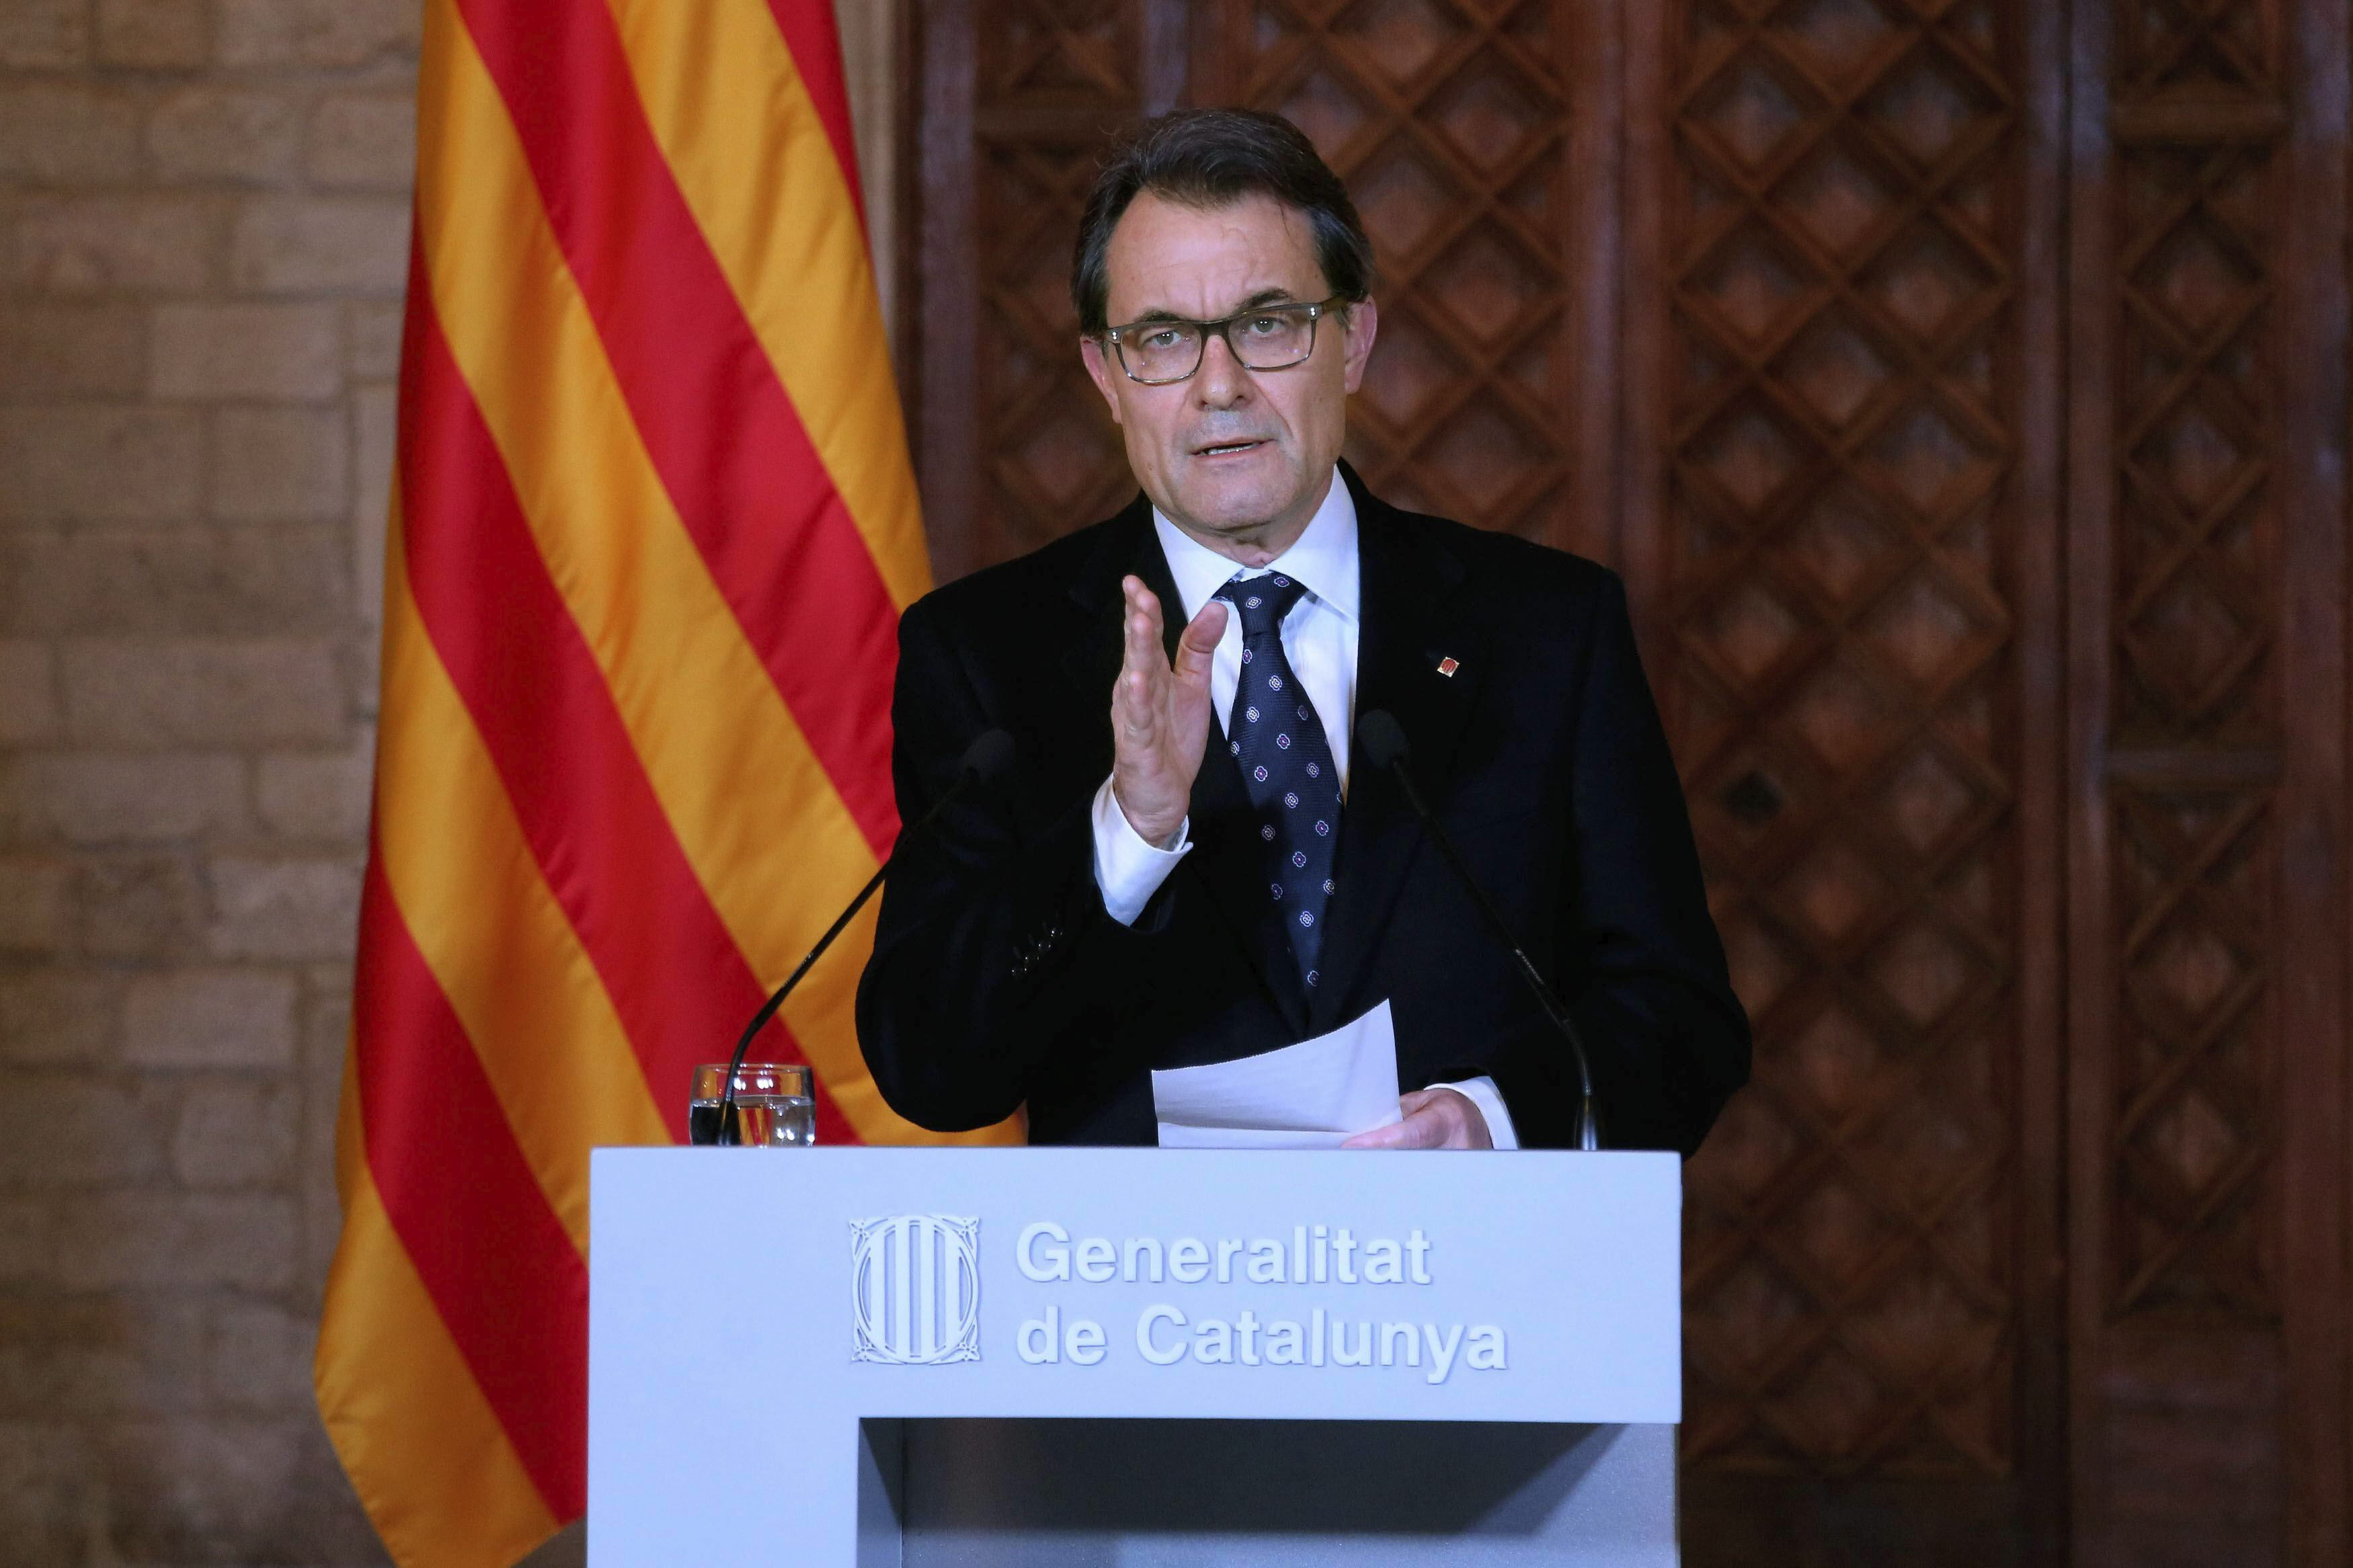 Mas, tras el portazo del Congreso, pide a Rajoy que ponga fecha y hora para un encuentro